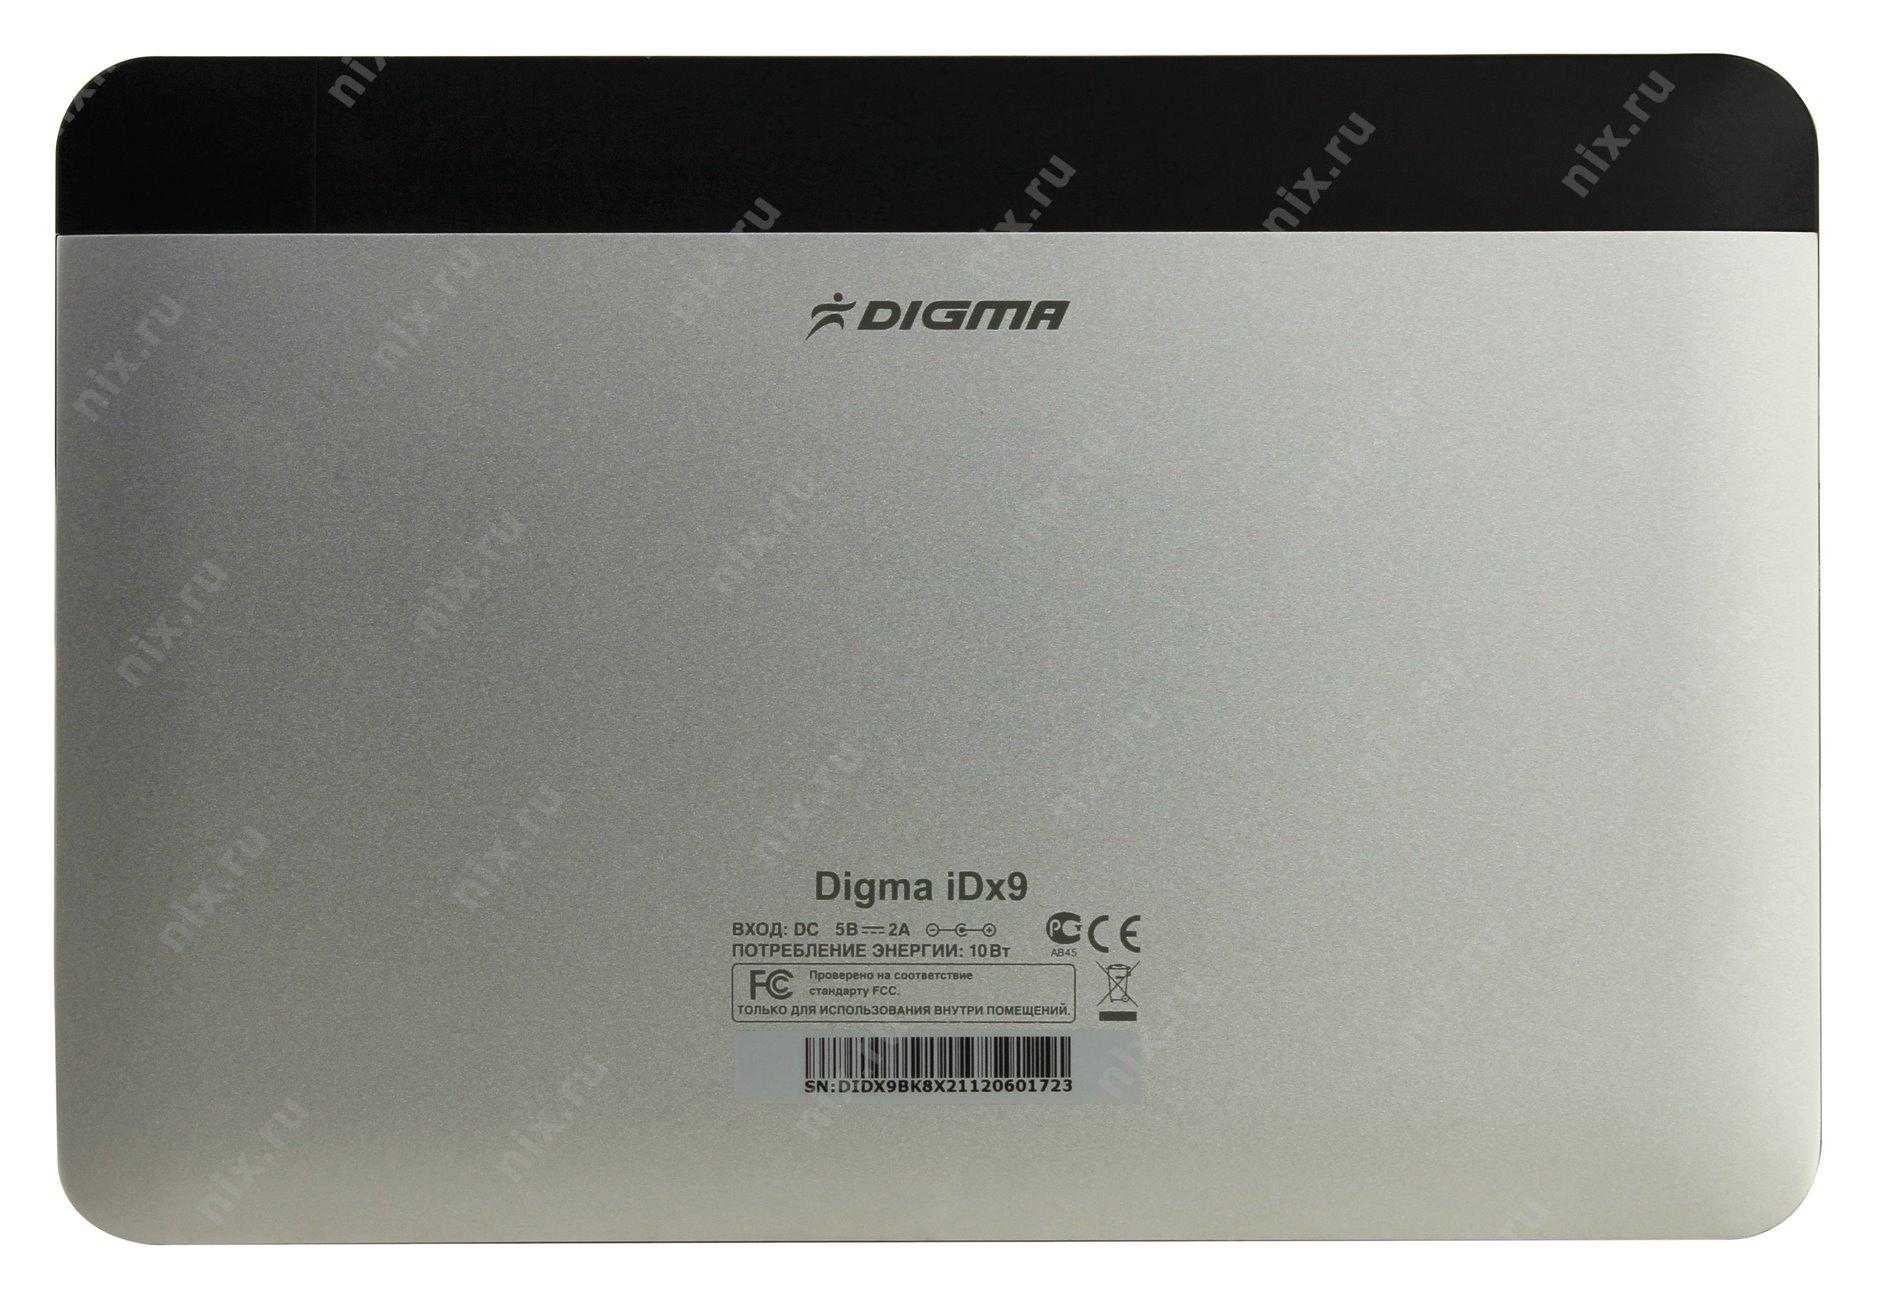 Планшет digma idx9 — купить, цена и характеристики, отзывы